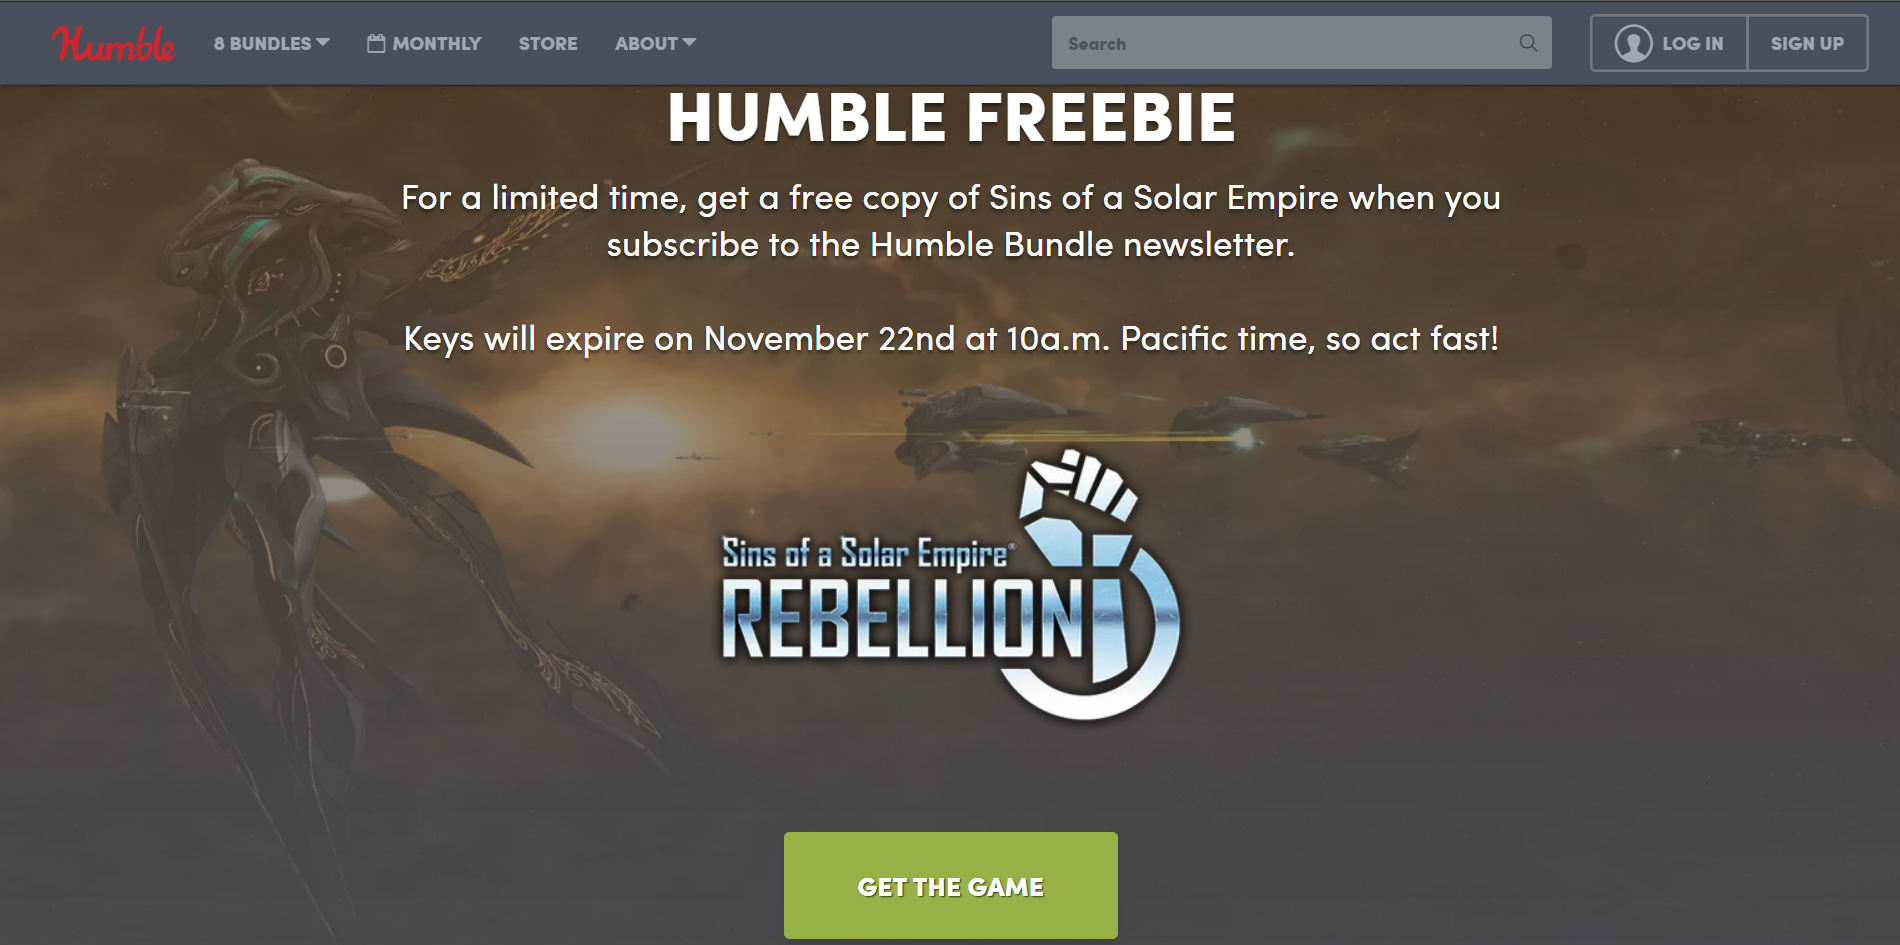 Nhanh tay lấy game Sins of a Solar Empire: Rebellion trị giá $40 hiện đang miễn phí trong 2 ngày